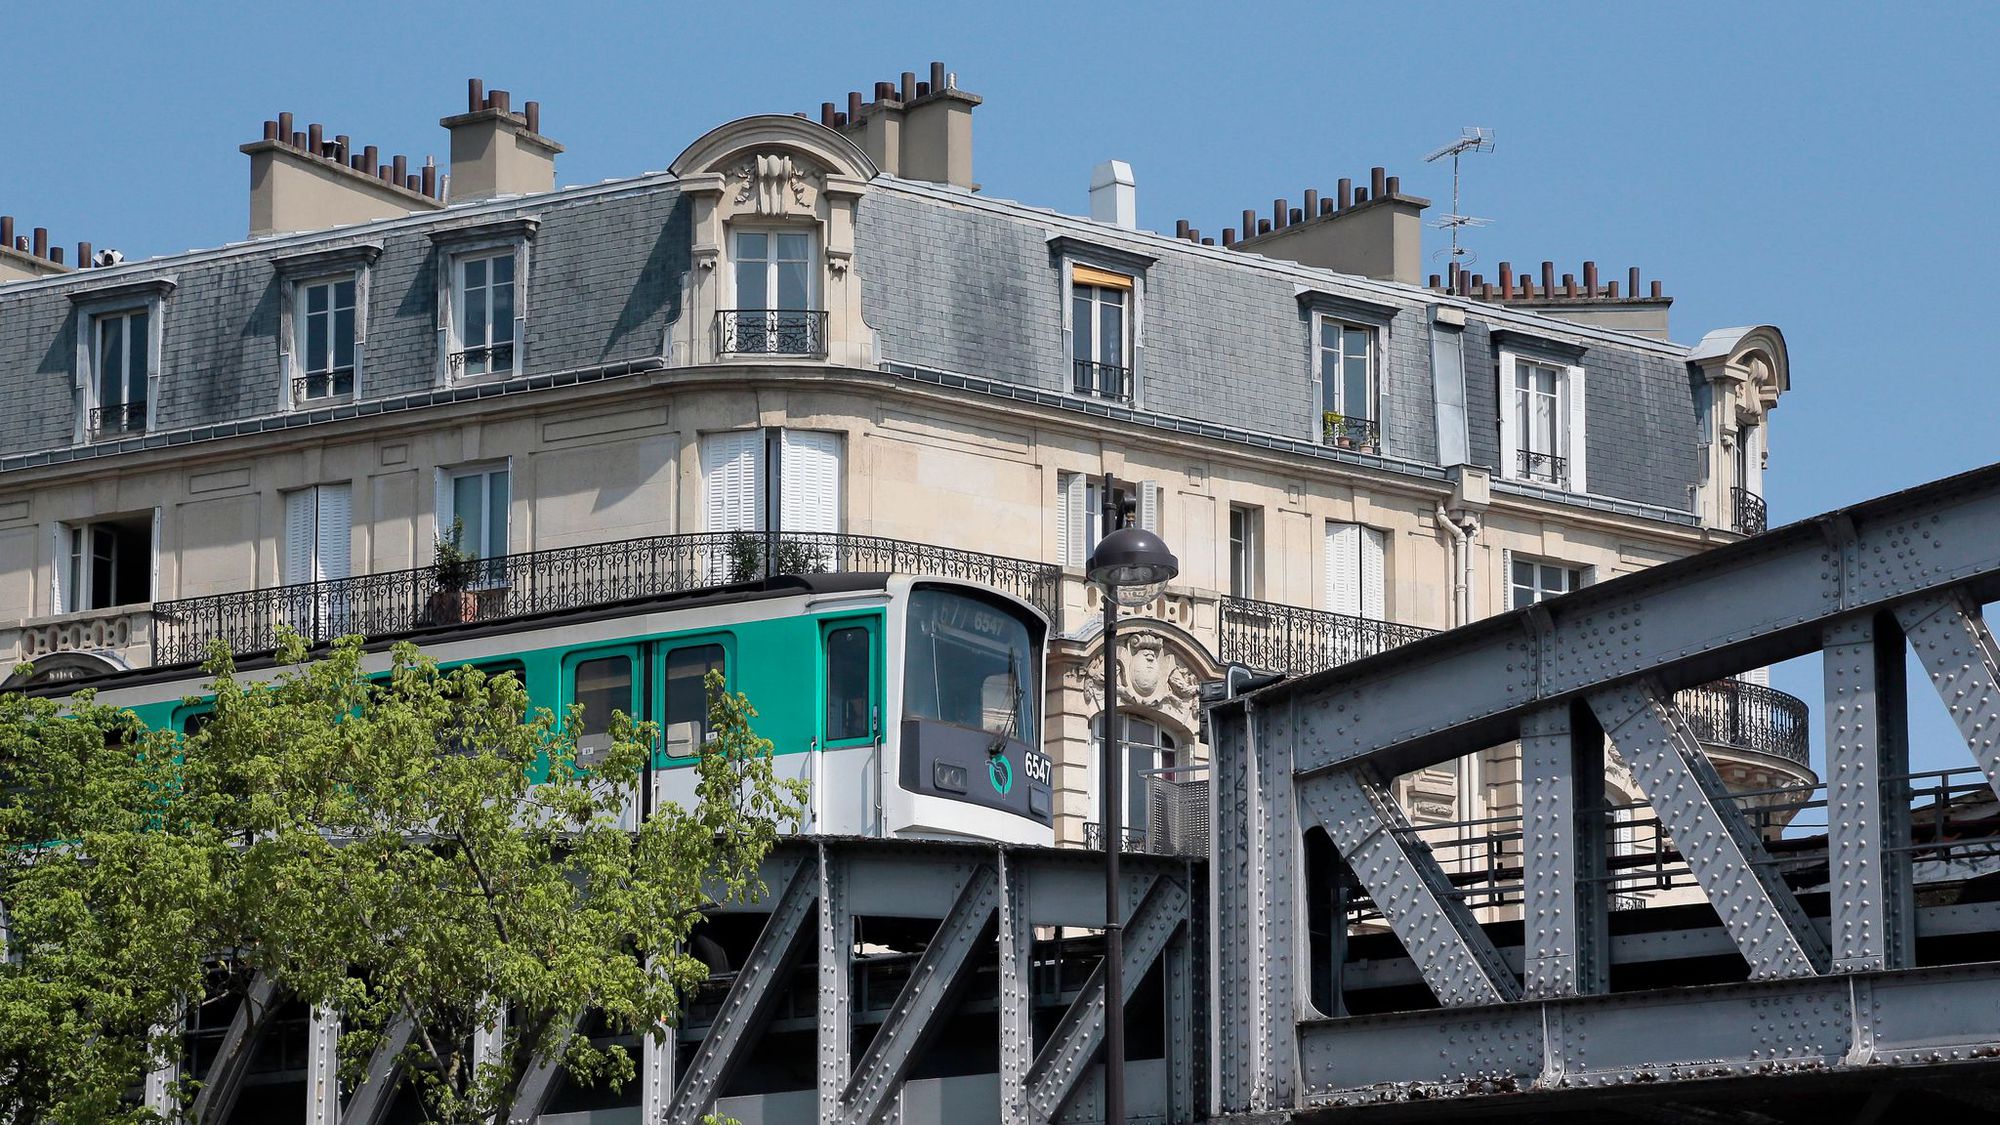 Un mineur se tue après être monté sur le toit d'un métro à Paris - L'Express